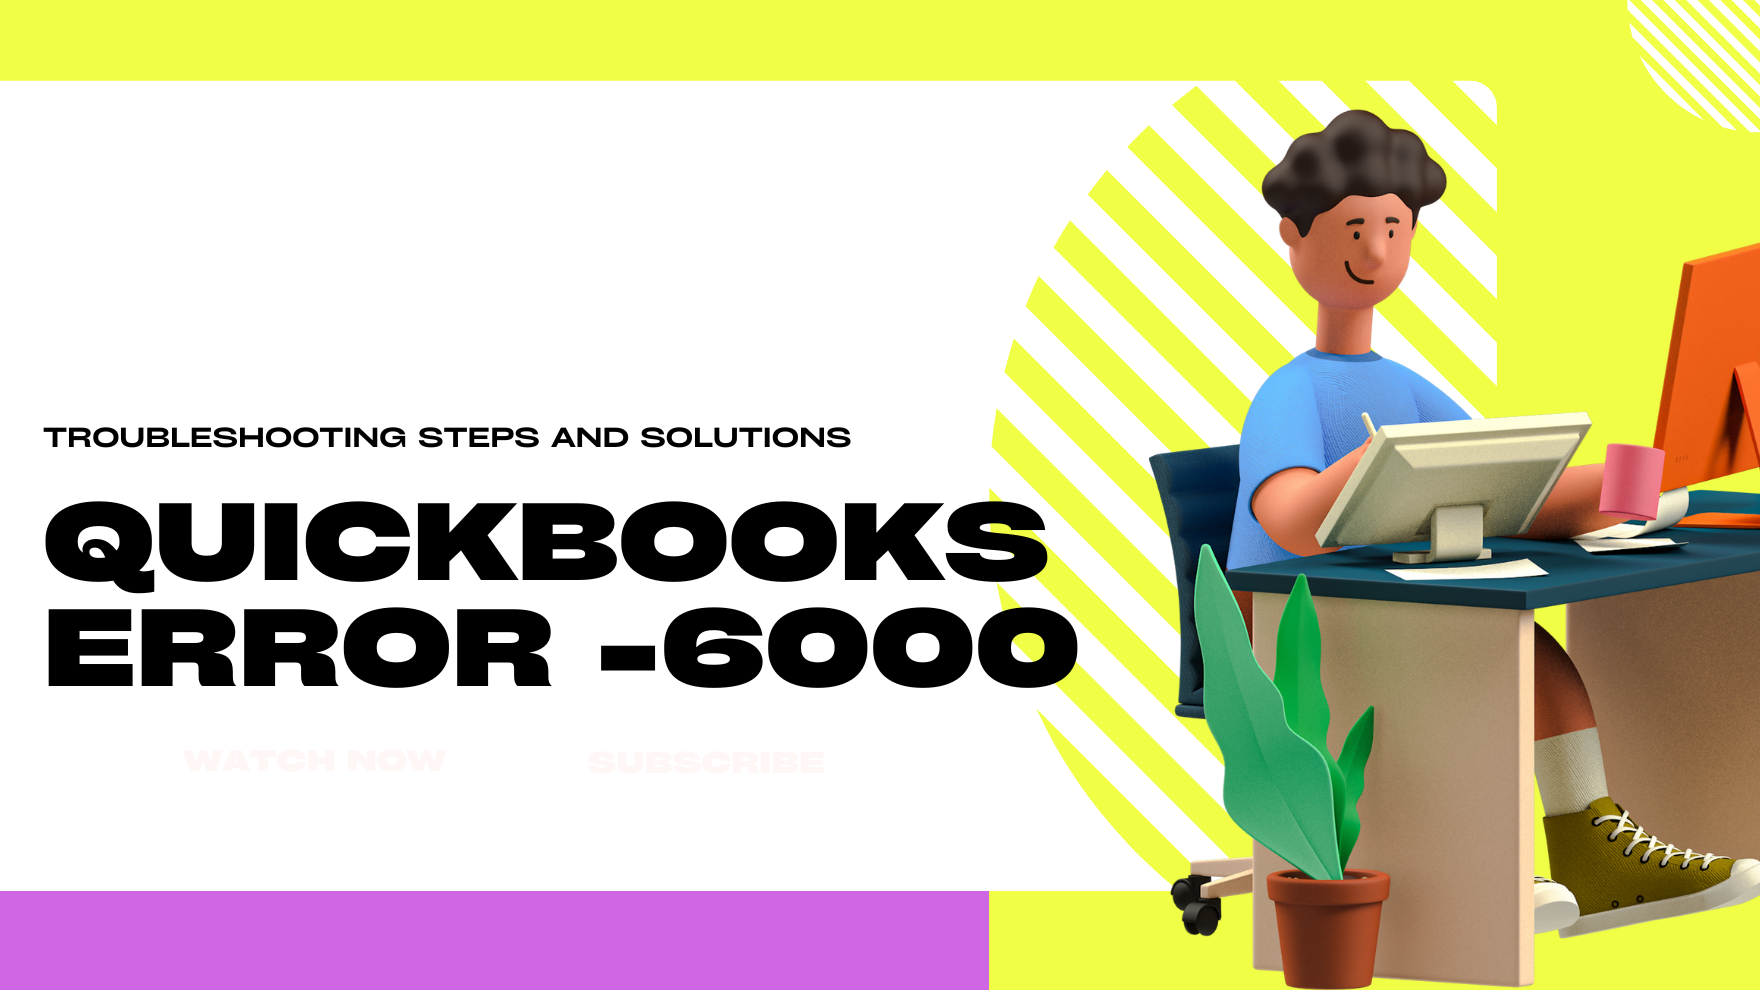 Resolve QuickBooks Error -6000